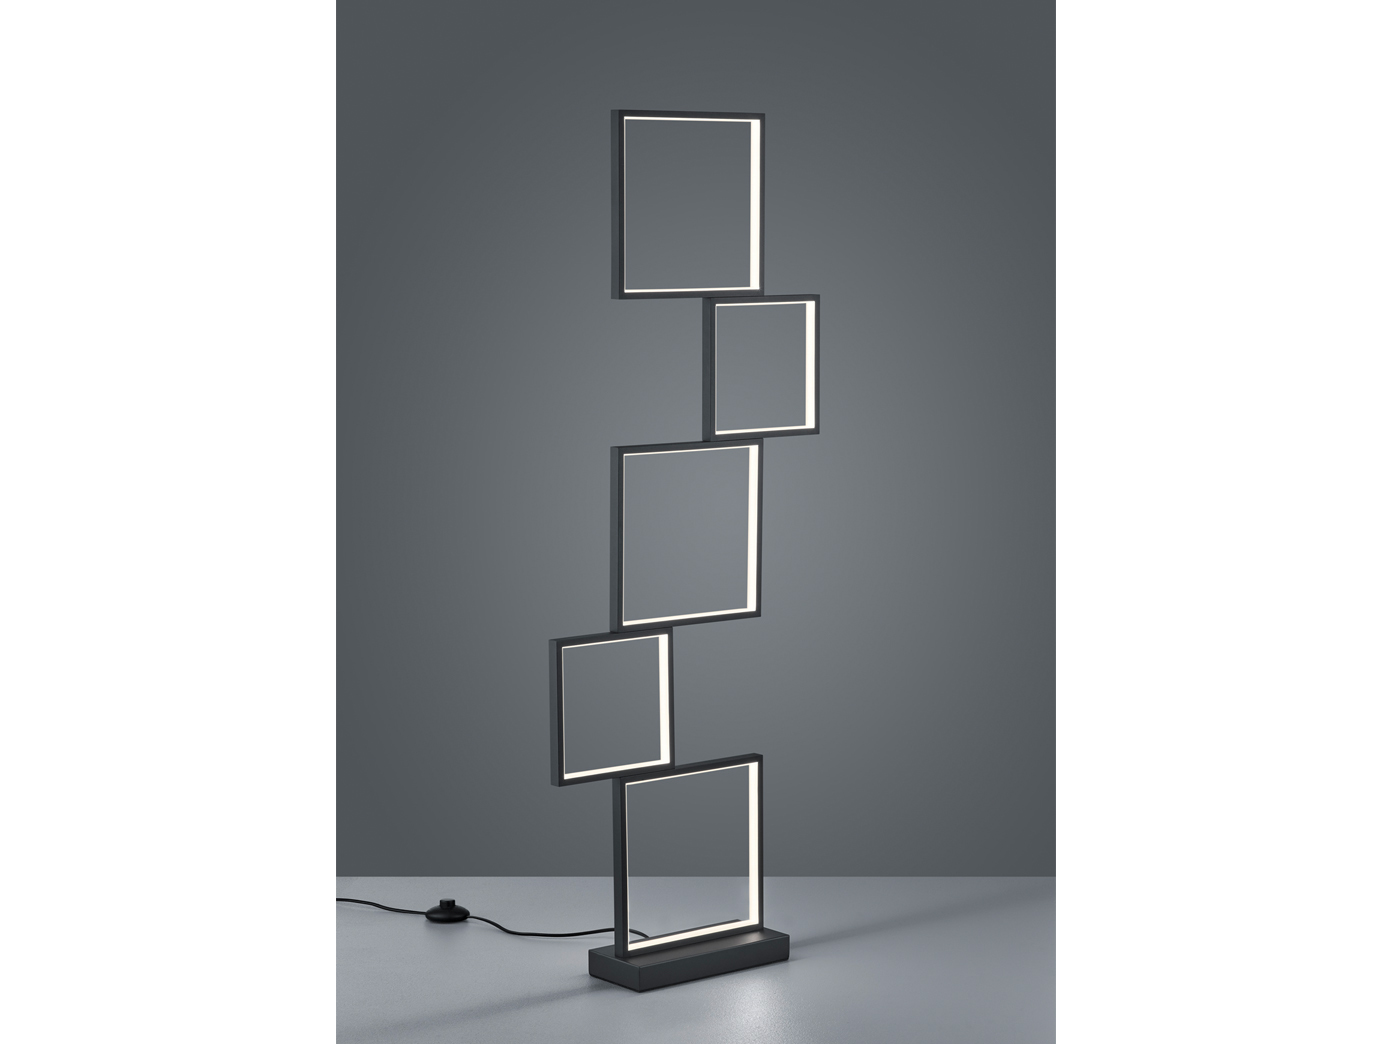 Trio LED Deckenlampe Sorrento Deckenleuchte 52 2x52 2x16cm schwarz online  kaufen | eBay | Deckenlampen